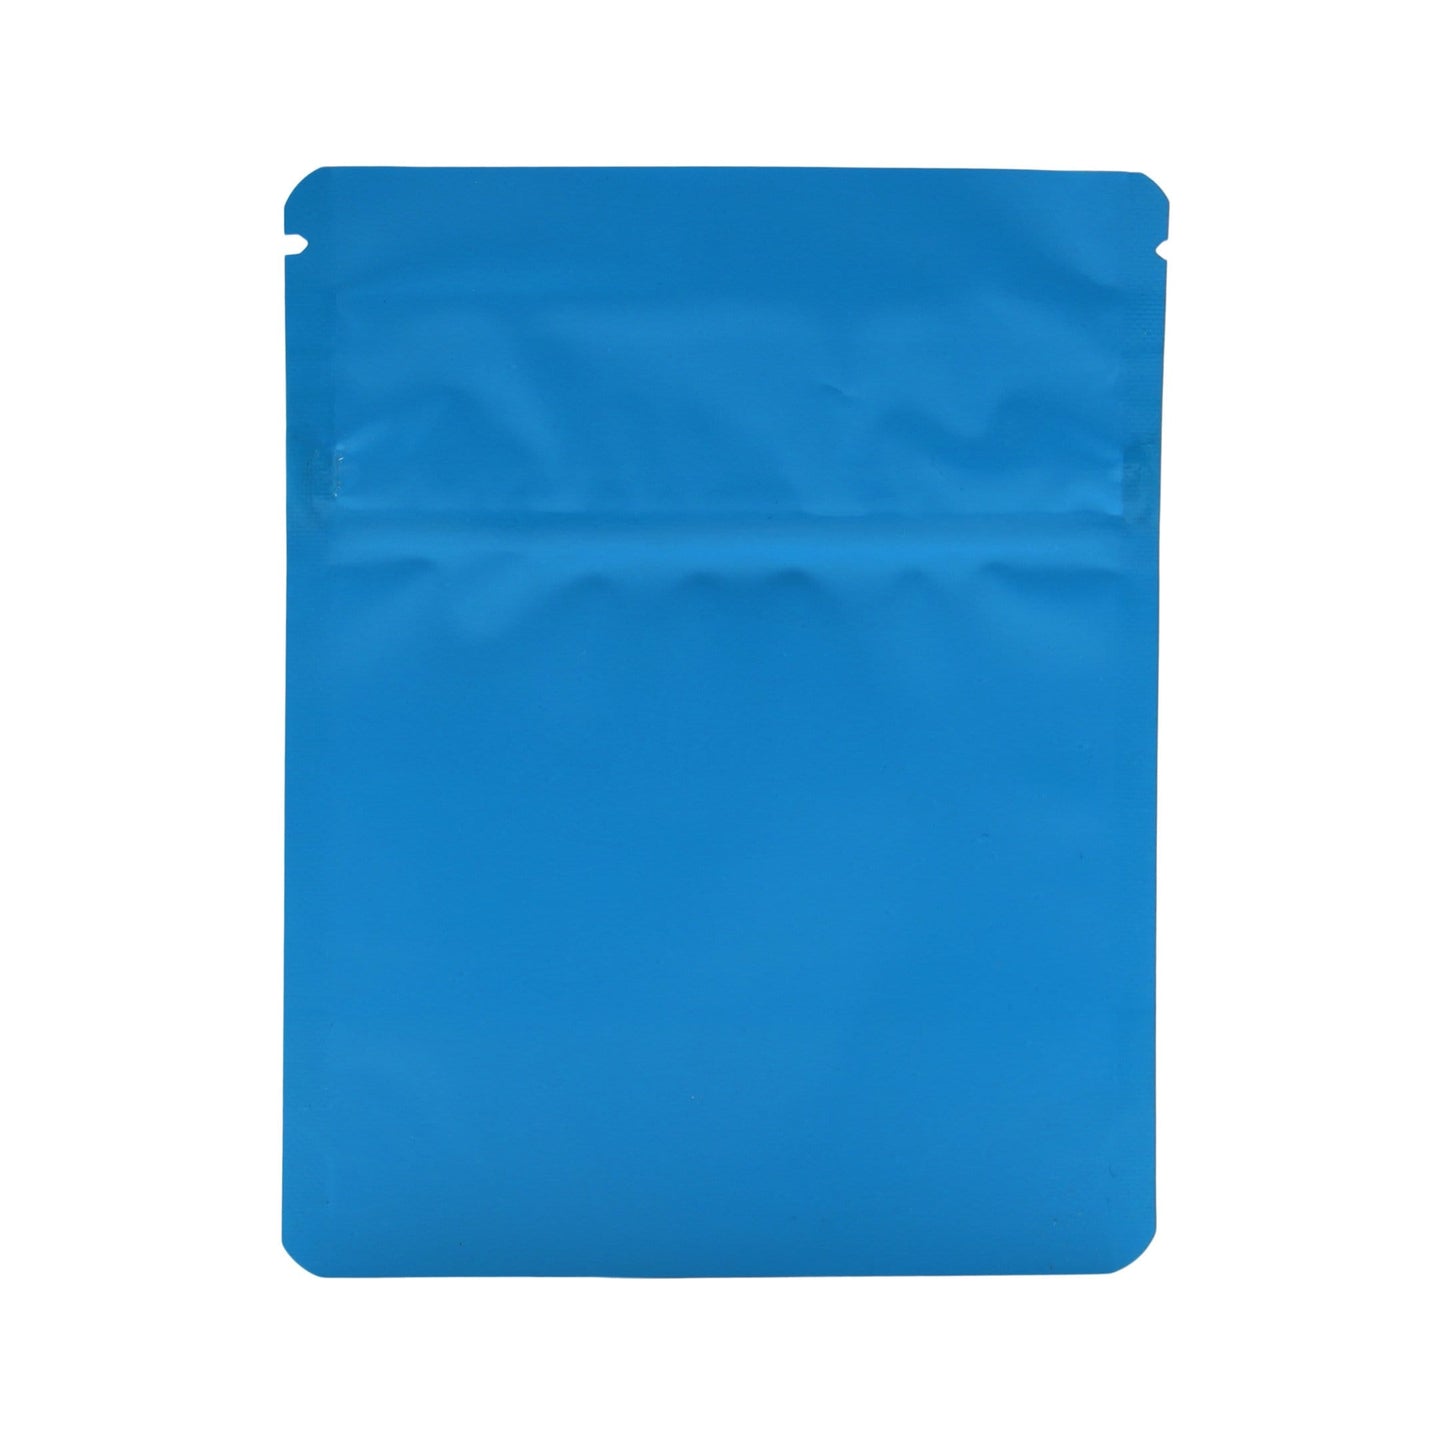 Matte Blue Bag King Child-Resistant Opaque Mylar Bag (1 gram)